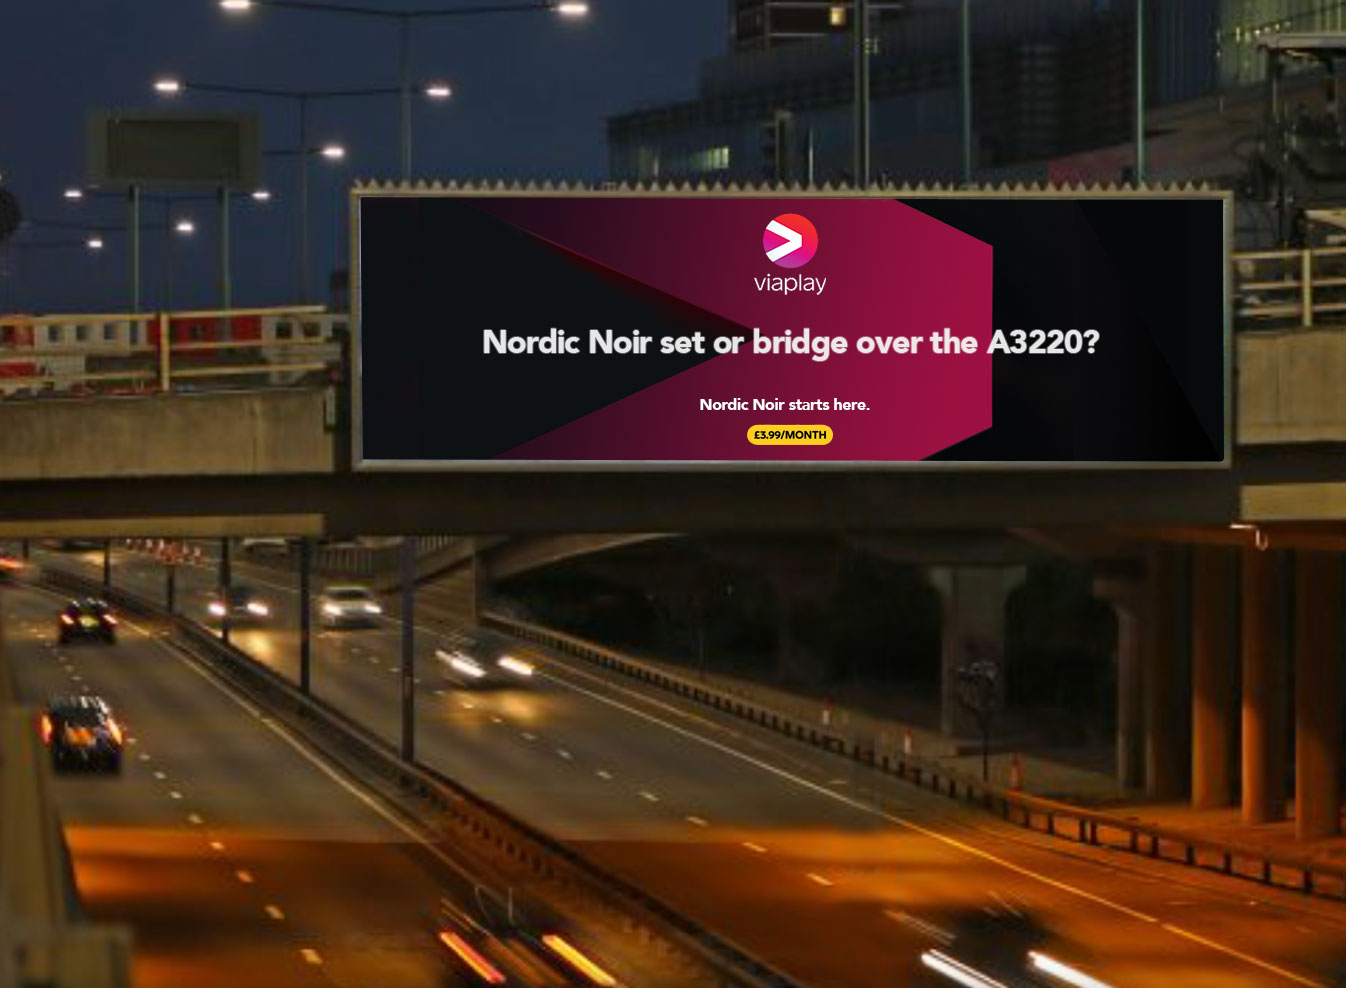 Nordic Noir set of bridge over the A3220